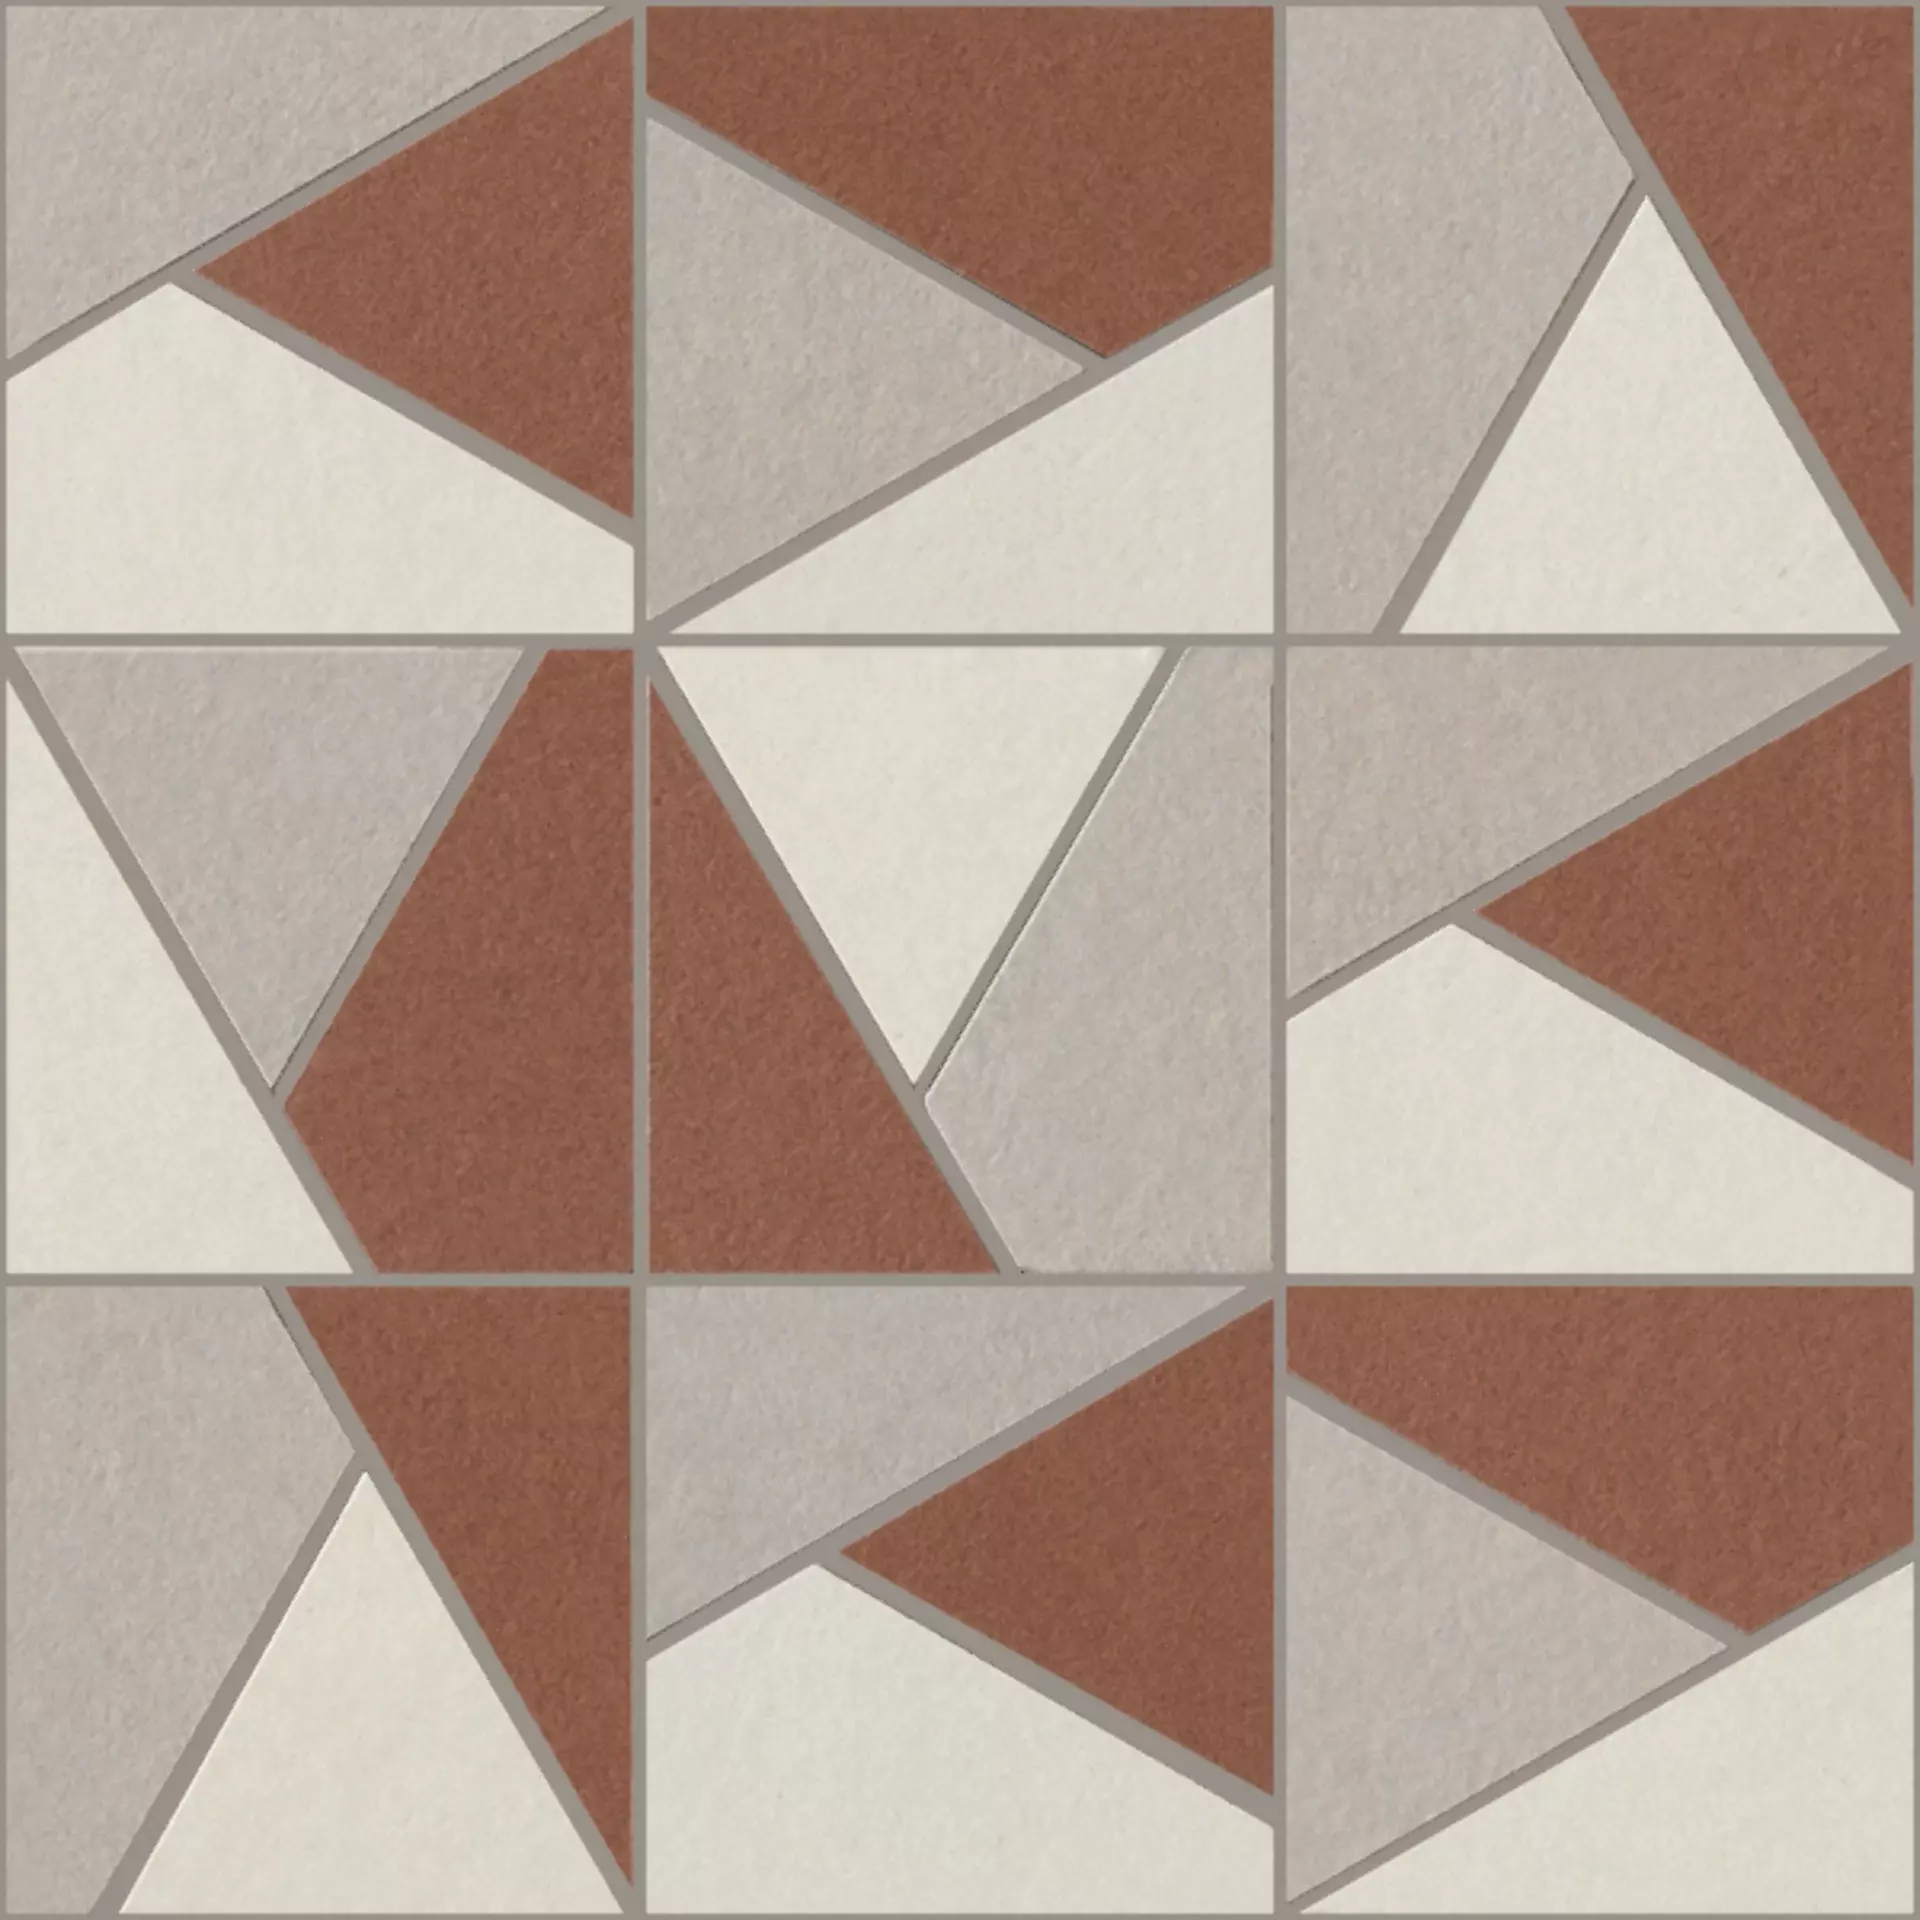 Italgraniti Nuances Caldo 2 Strideup Mosaic Triangles Mix NU00MTGC2 30x30cm rectified